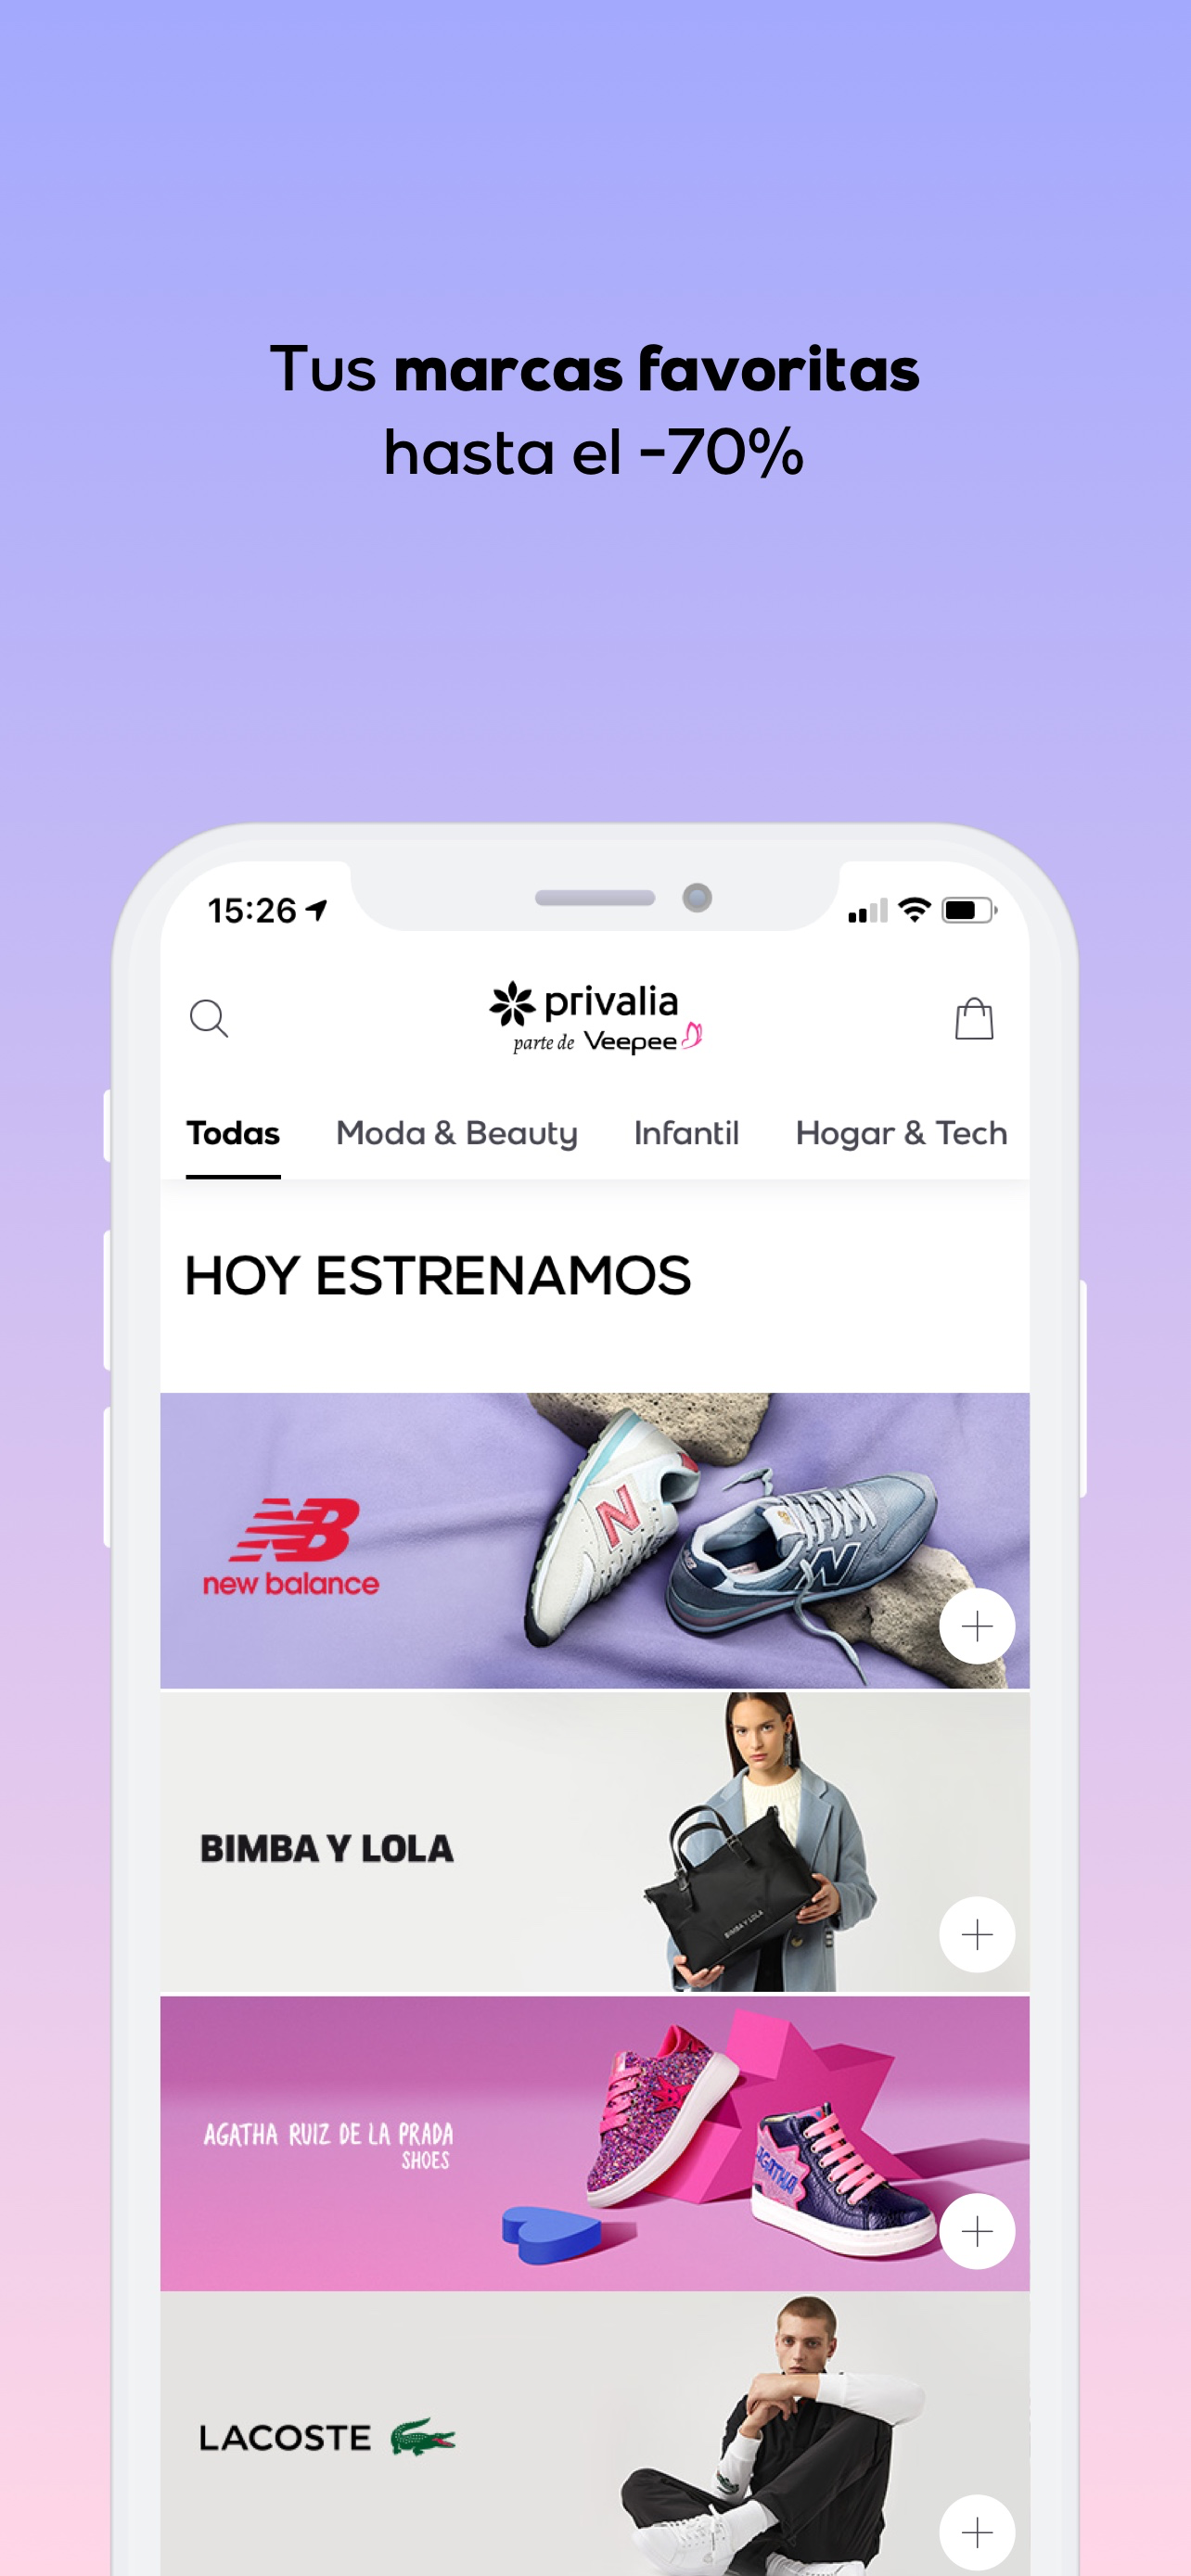 Outlet de marcas - Overview - App Store - Spain